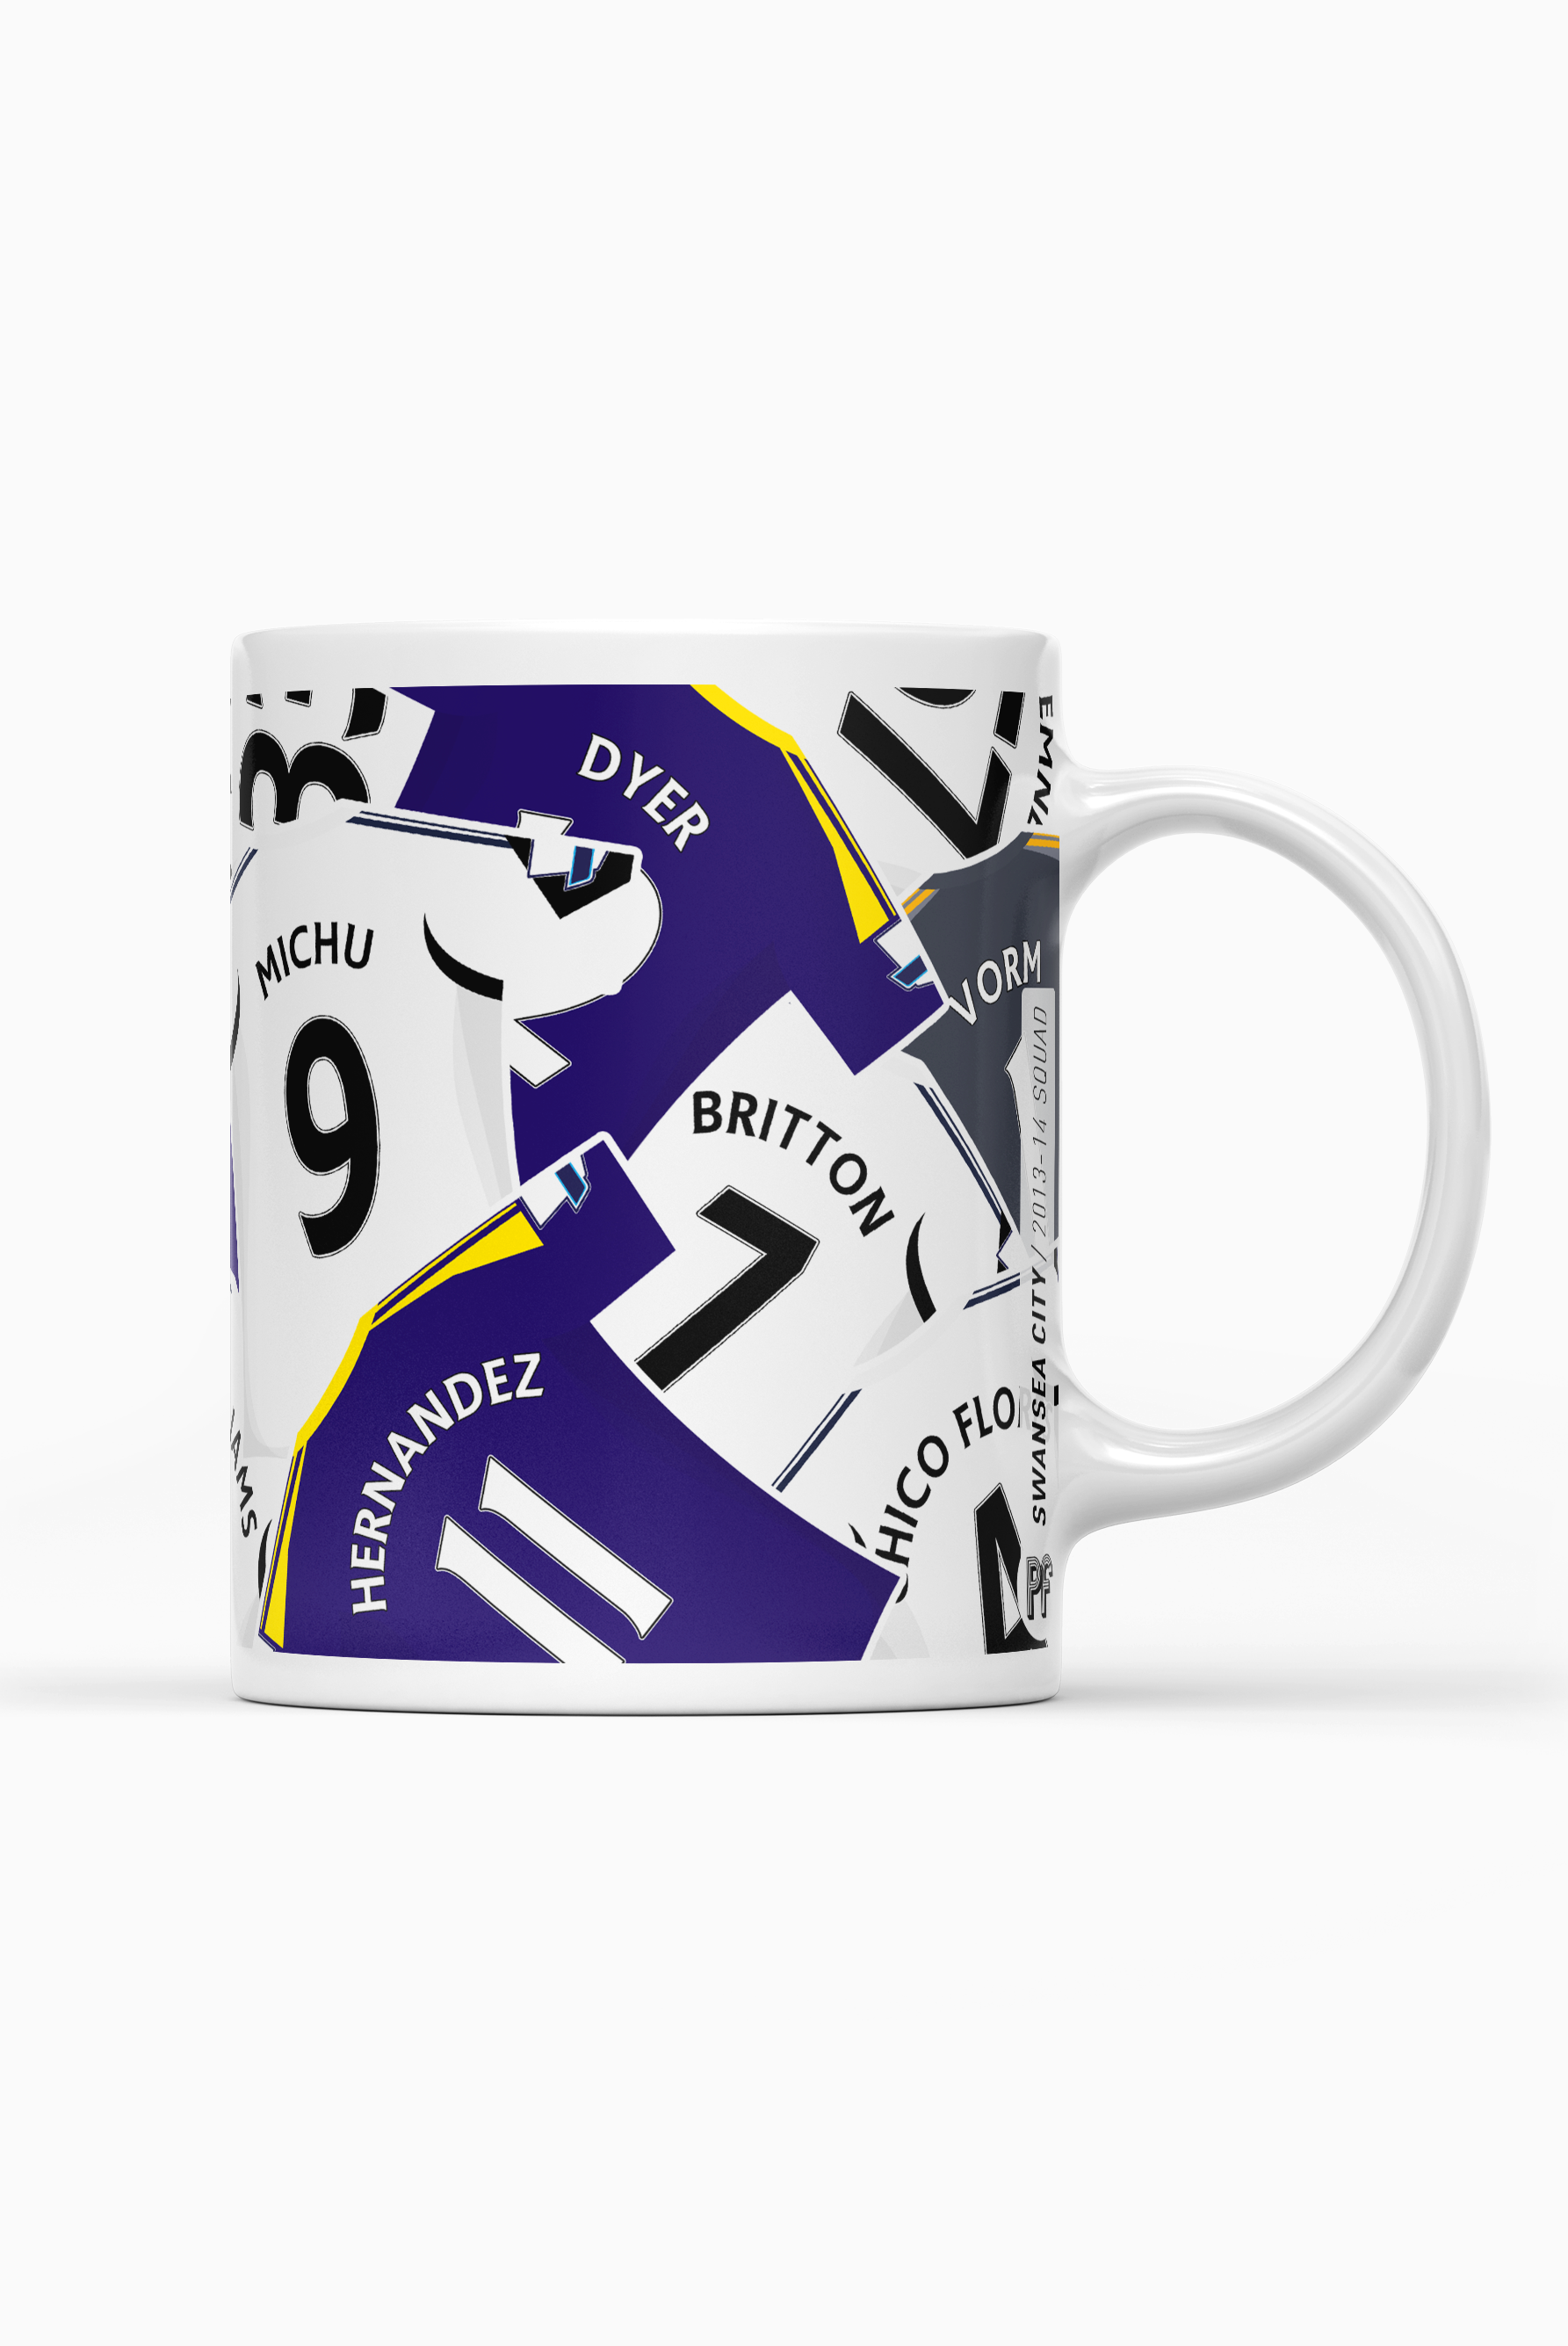 Swansea / 2013-14 Squad Mug